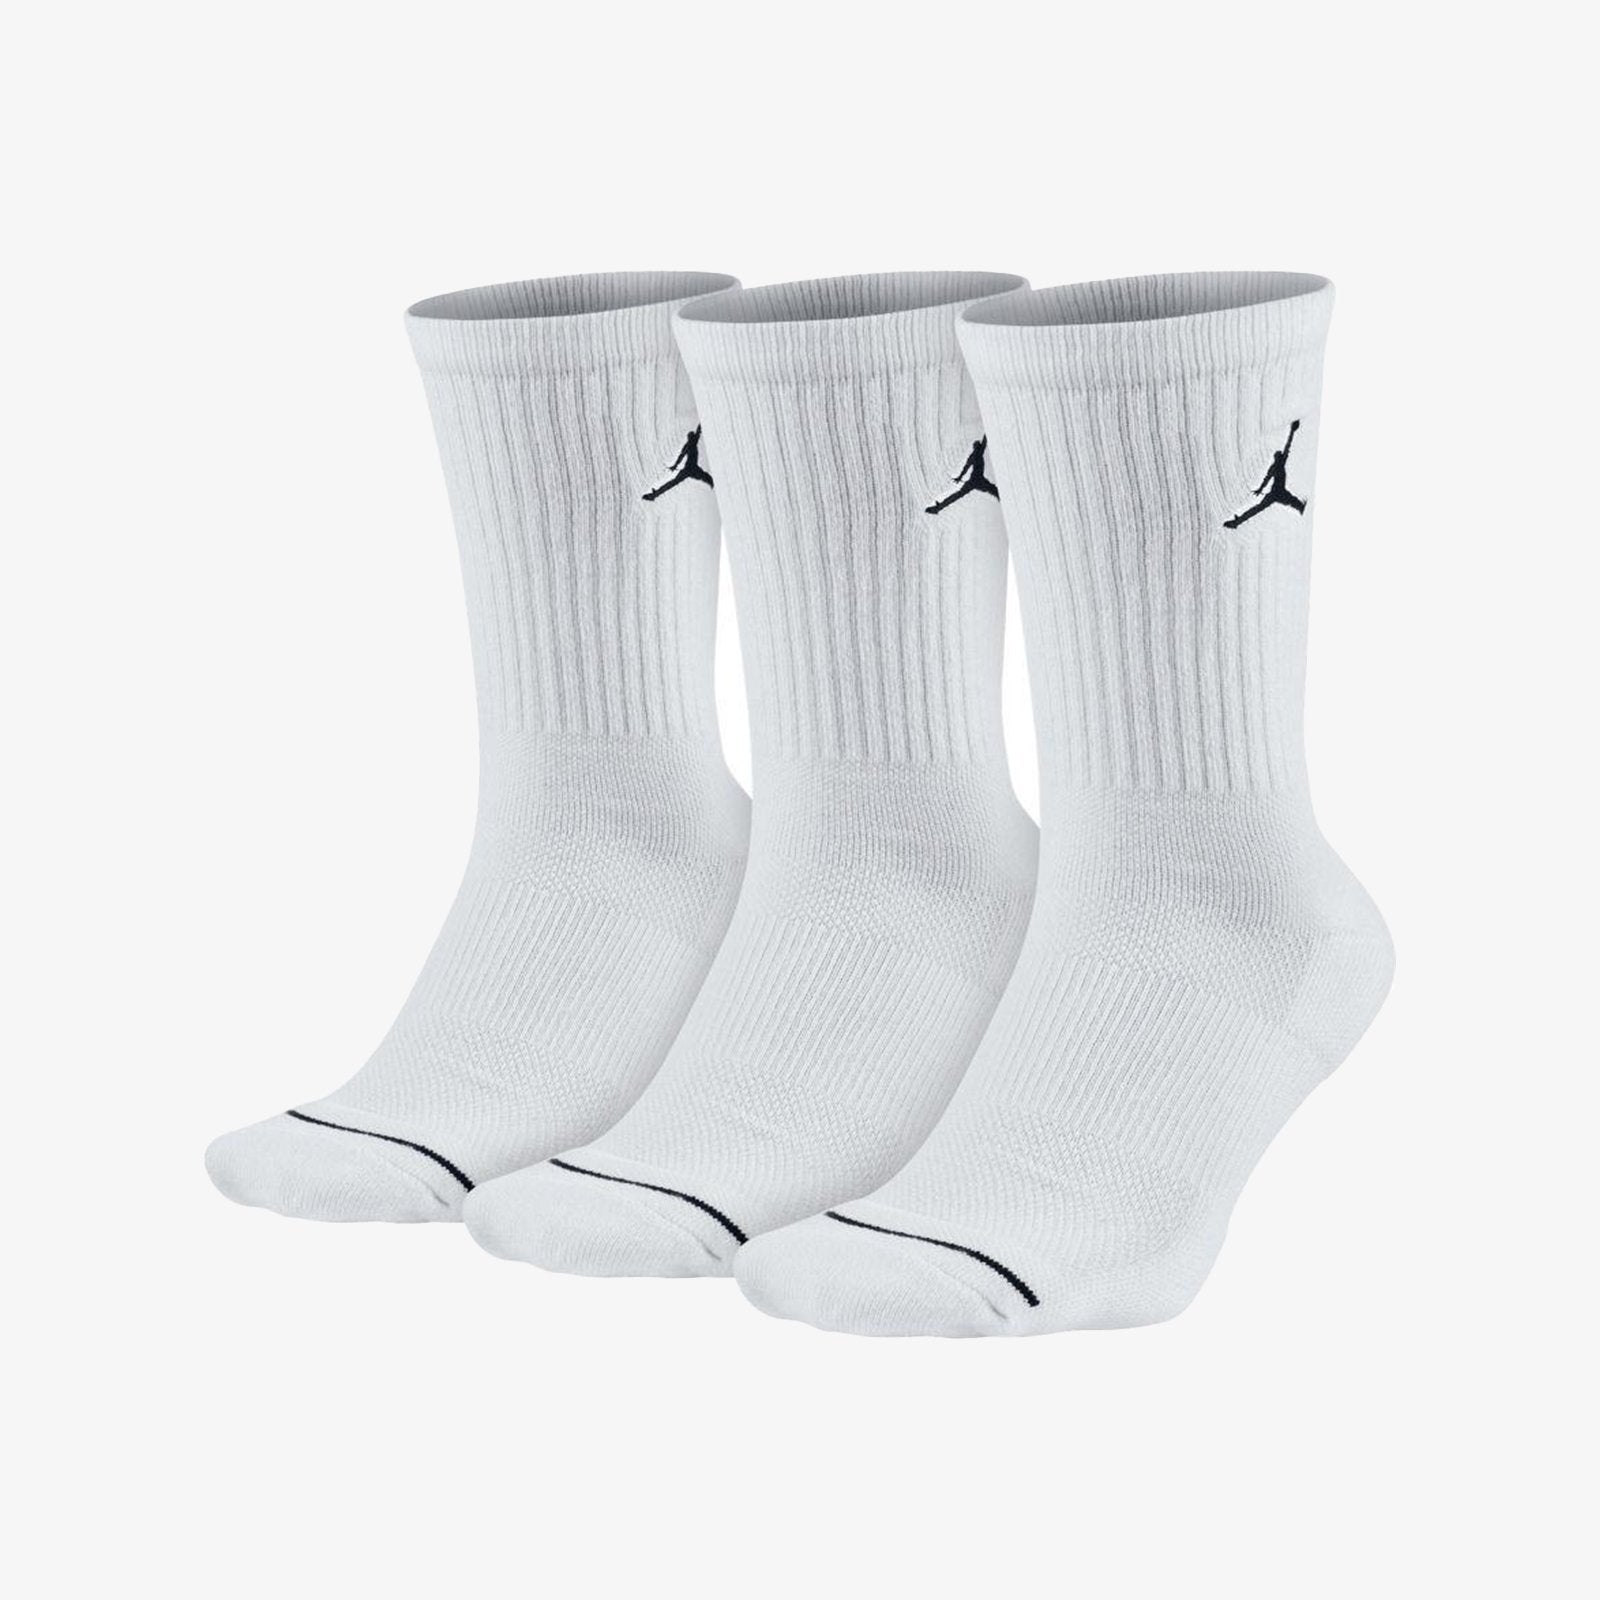 black jordans socks